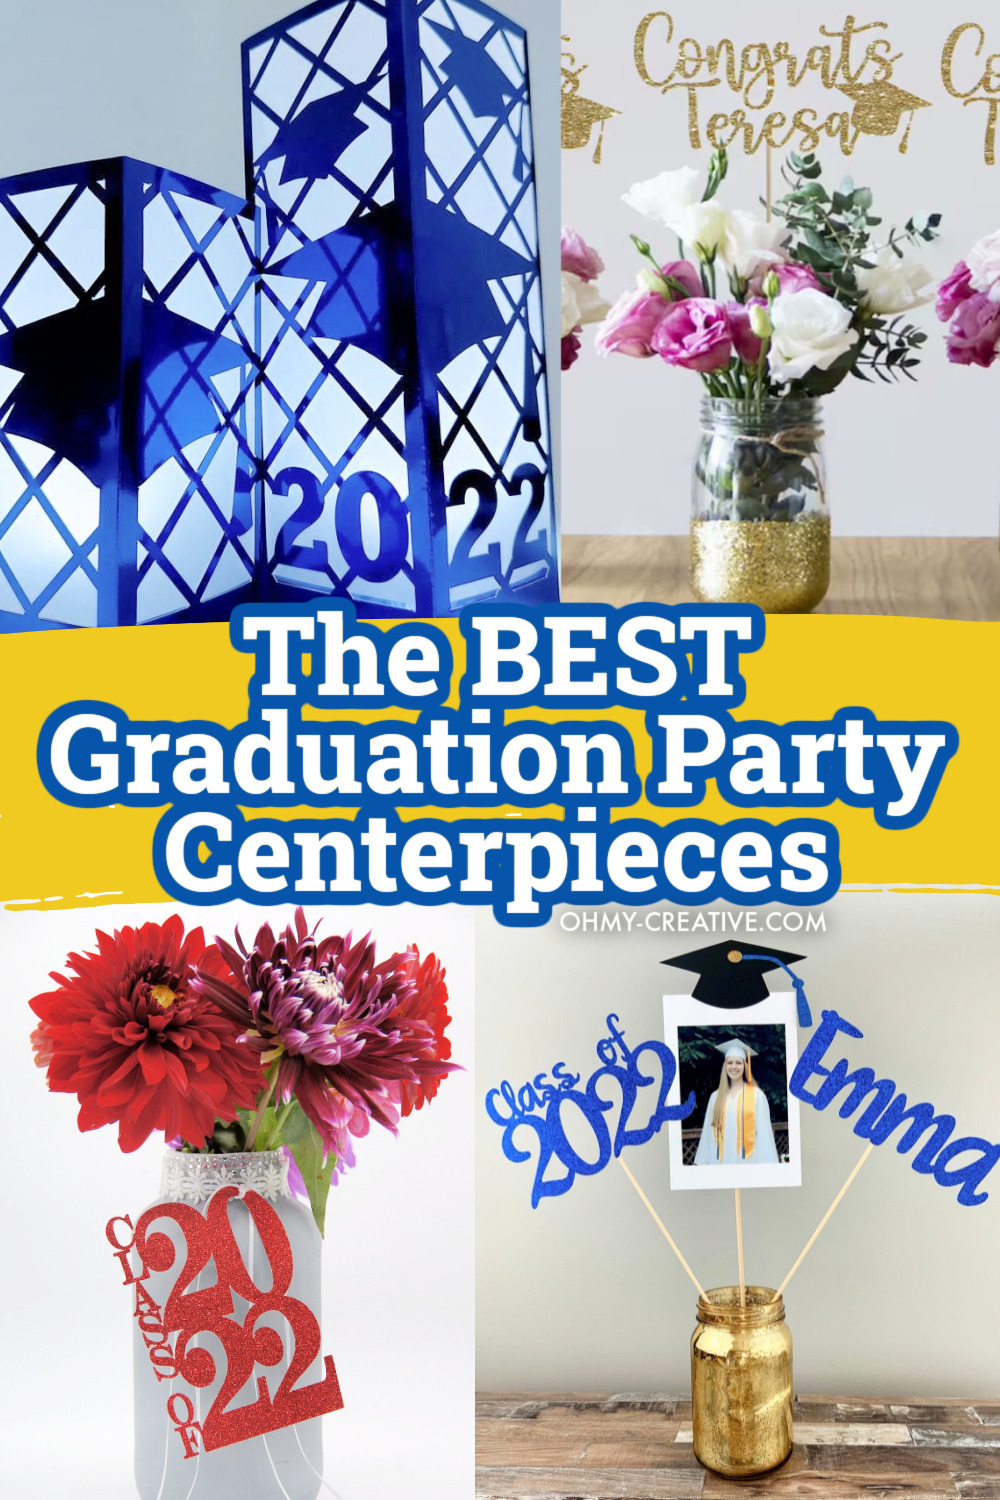 Graduation Party Centerpieces